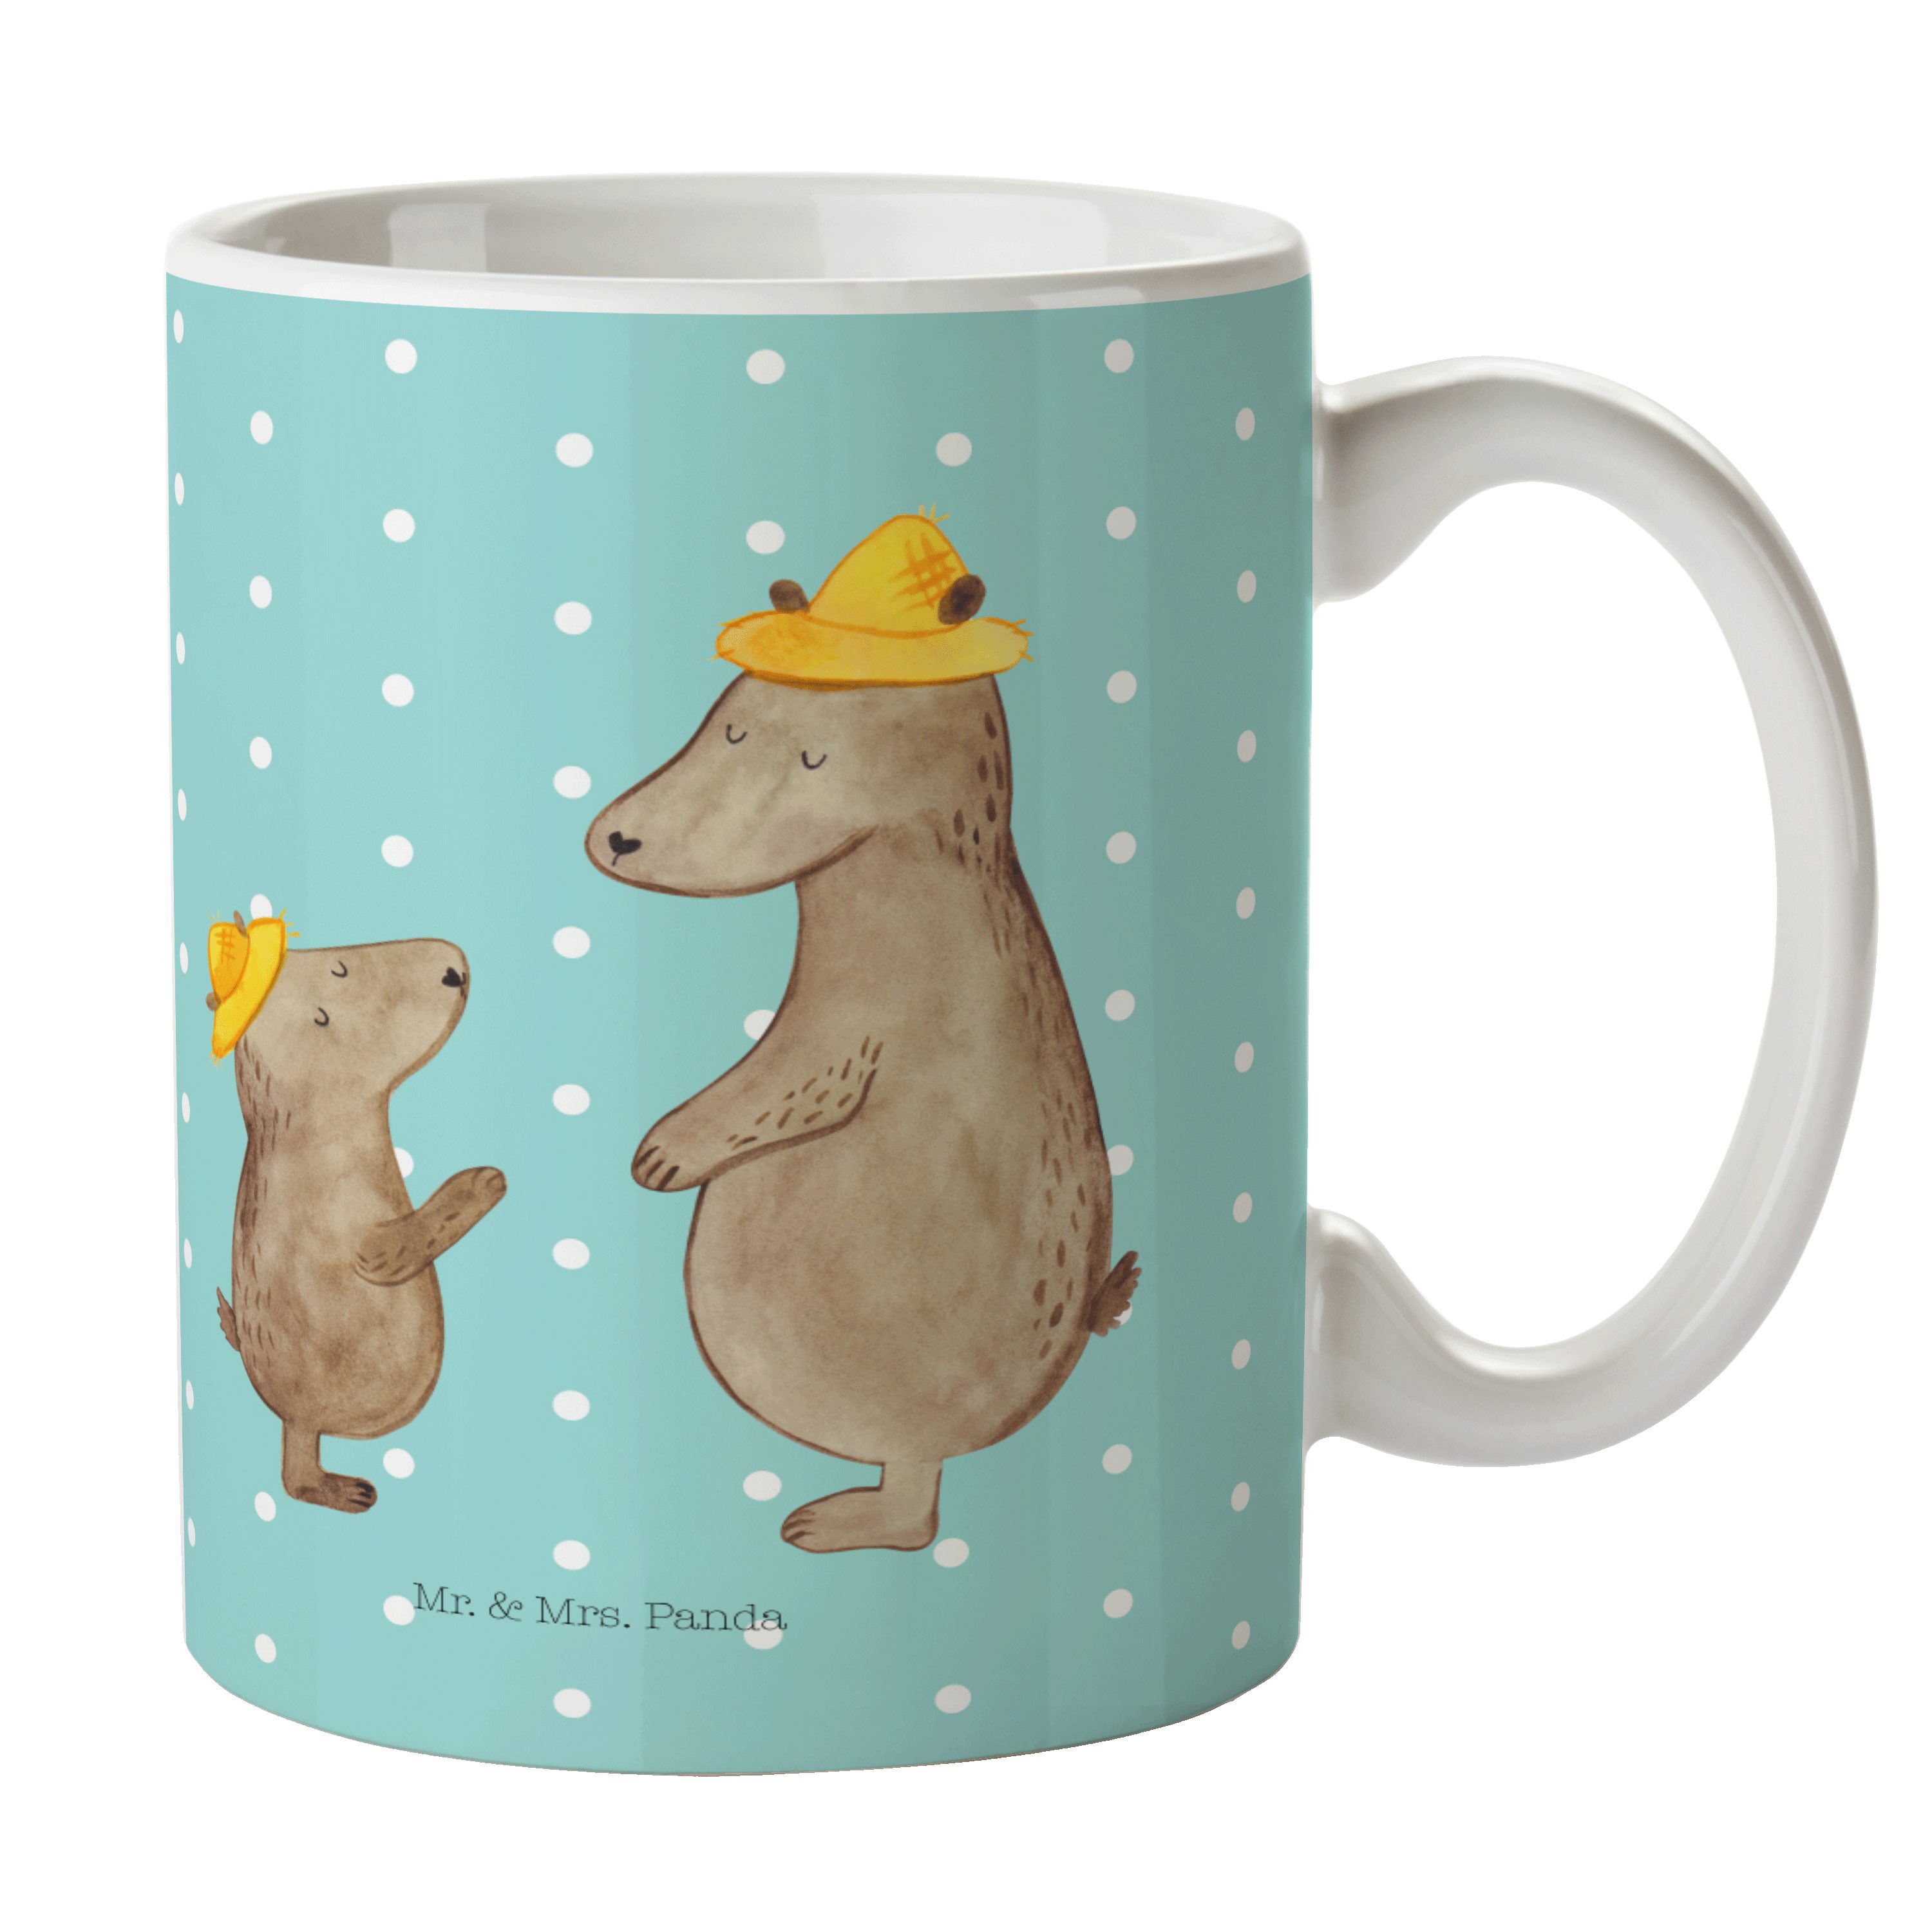 Mr. & Mrs. Panda Tasse Bären mit Hut - Türkis Pastell - Geschenk, Tasse, Schwester, Becher, Keramik